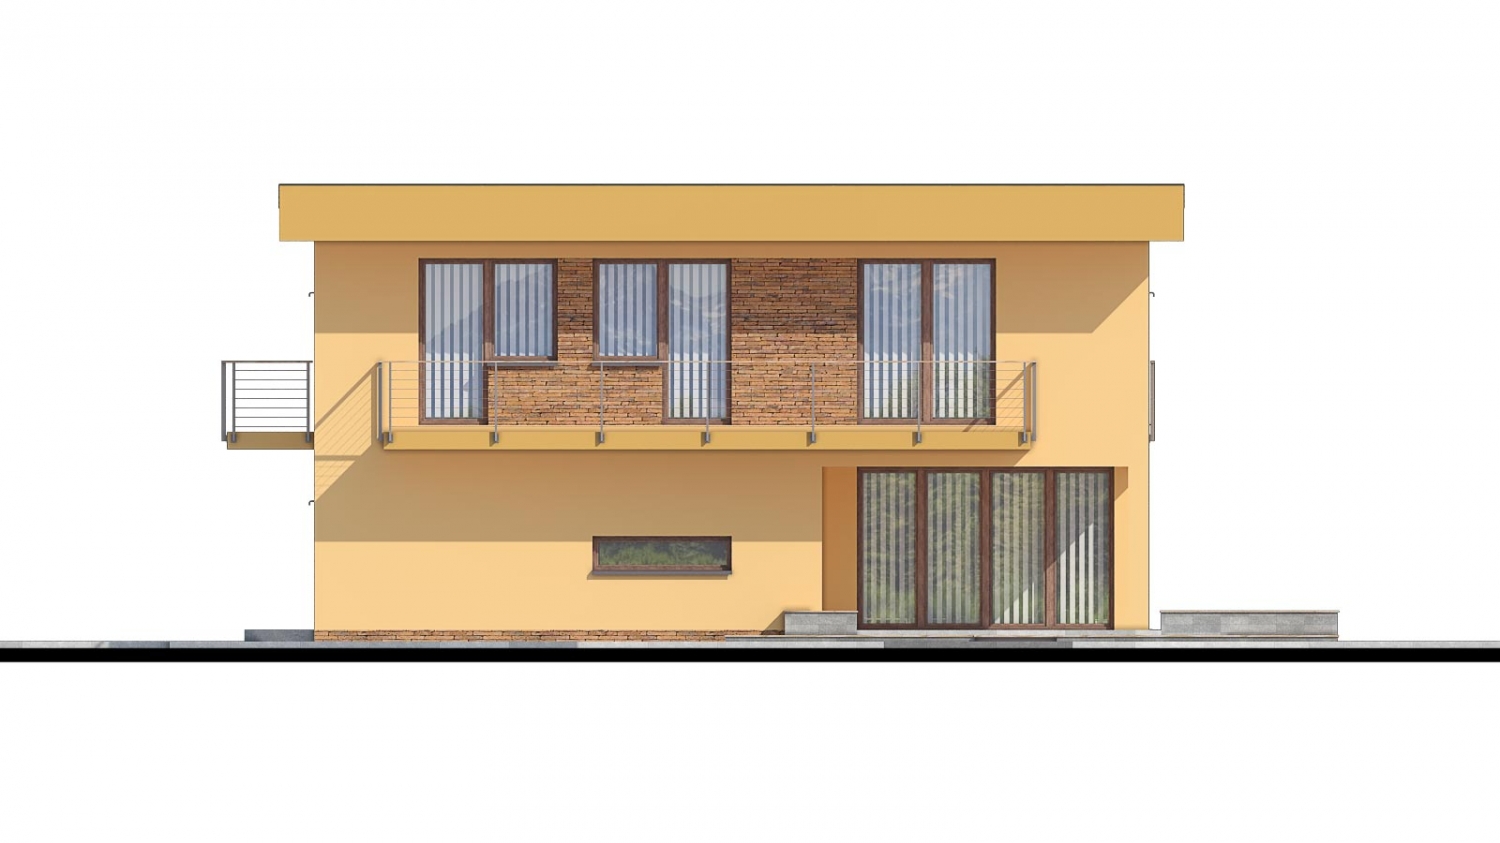 Pohľad 2. - Projekt domu je vhodný na úzký pozemek. Jde o patrový rodinný dům s překrytou terasou.